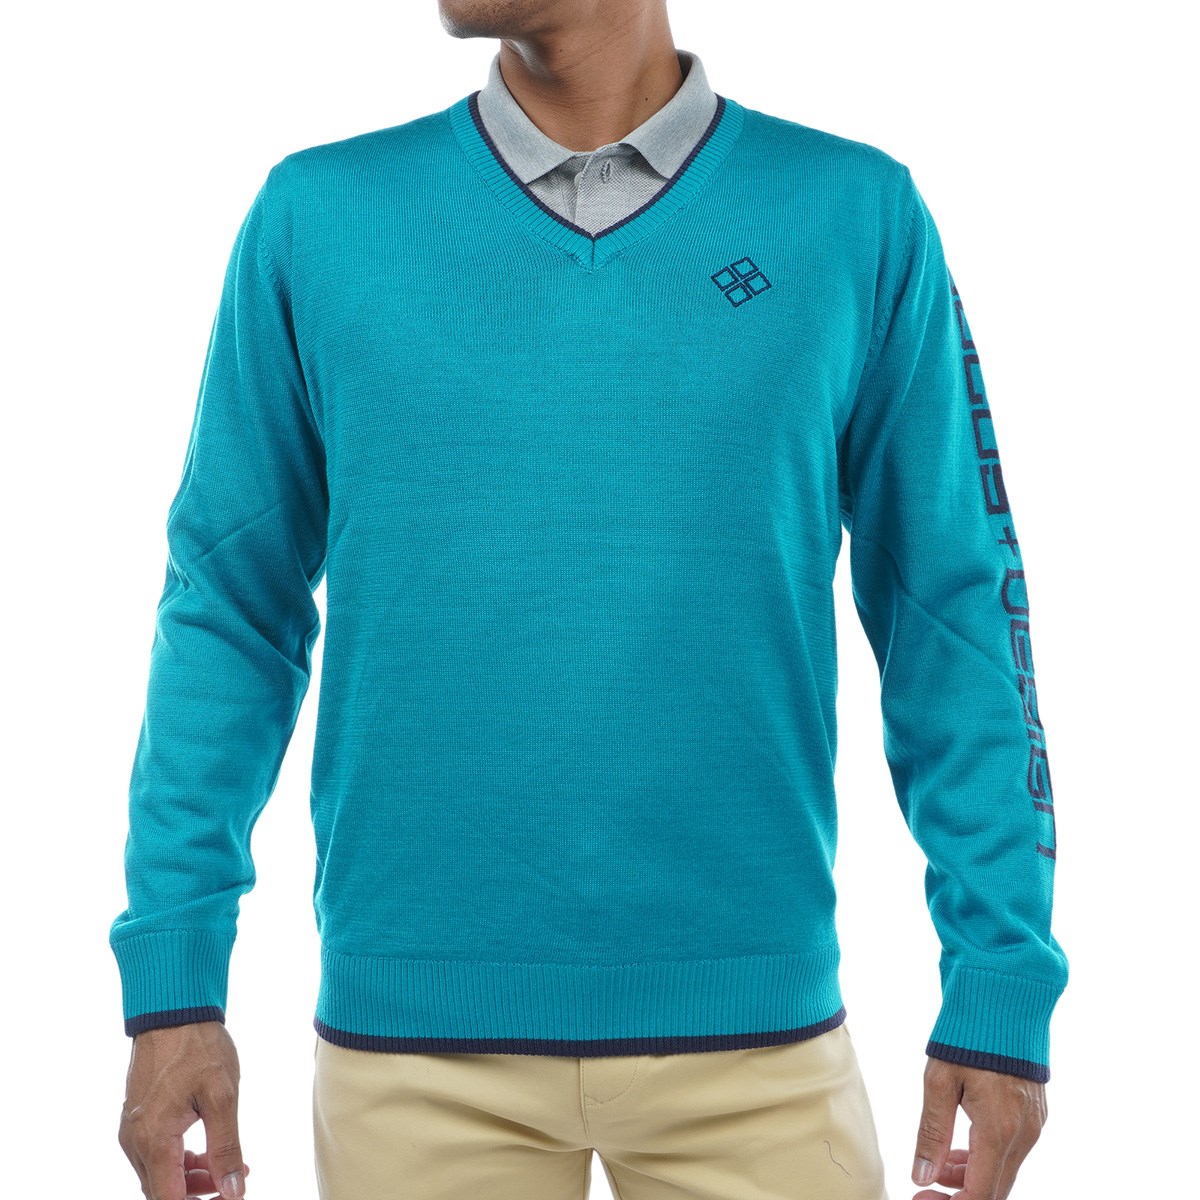 ゴルフウェア Vネック メンズ セーター メンズゴルフウェアの人気商品